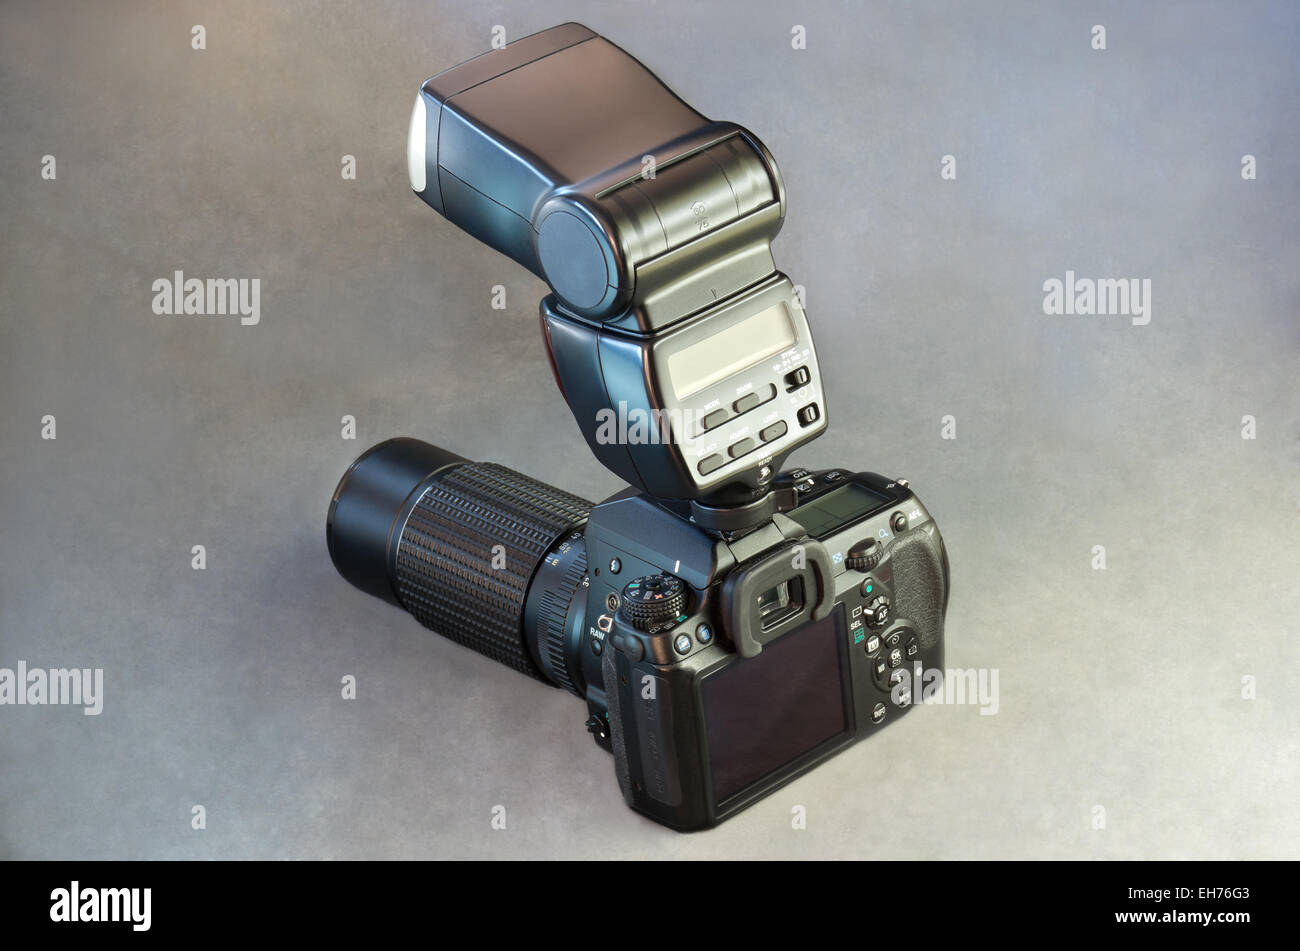 Una fotocamera reflex digitale con unità flash e un teleobiettivo su sfondo grigio Foto Stock